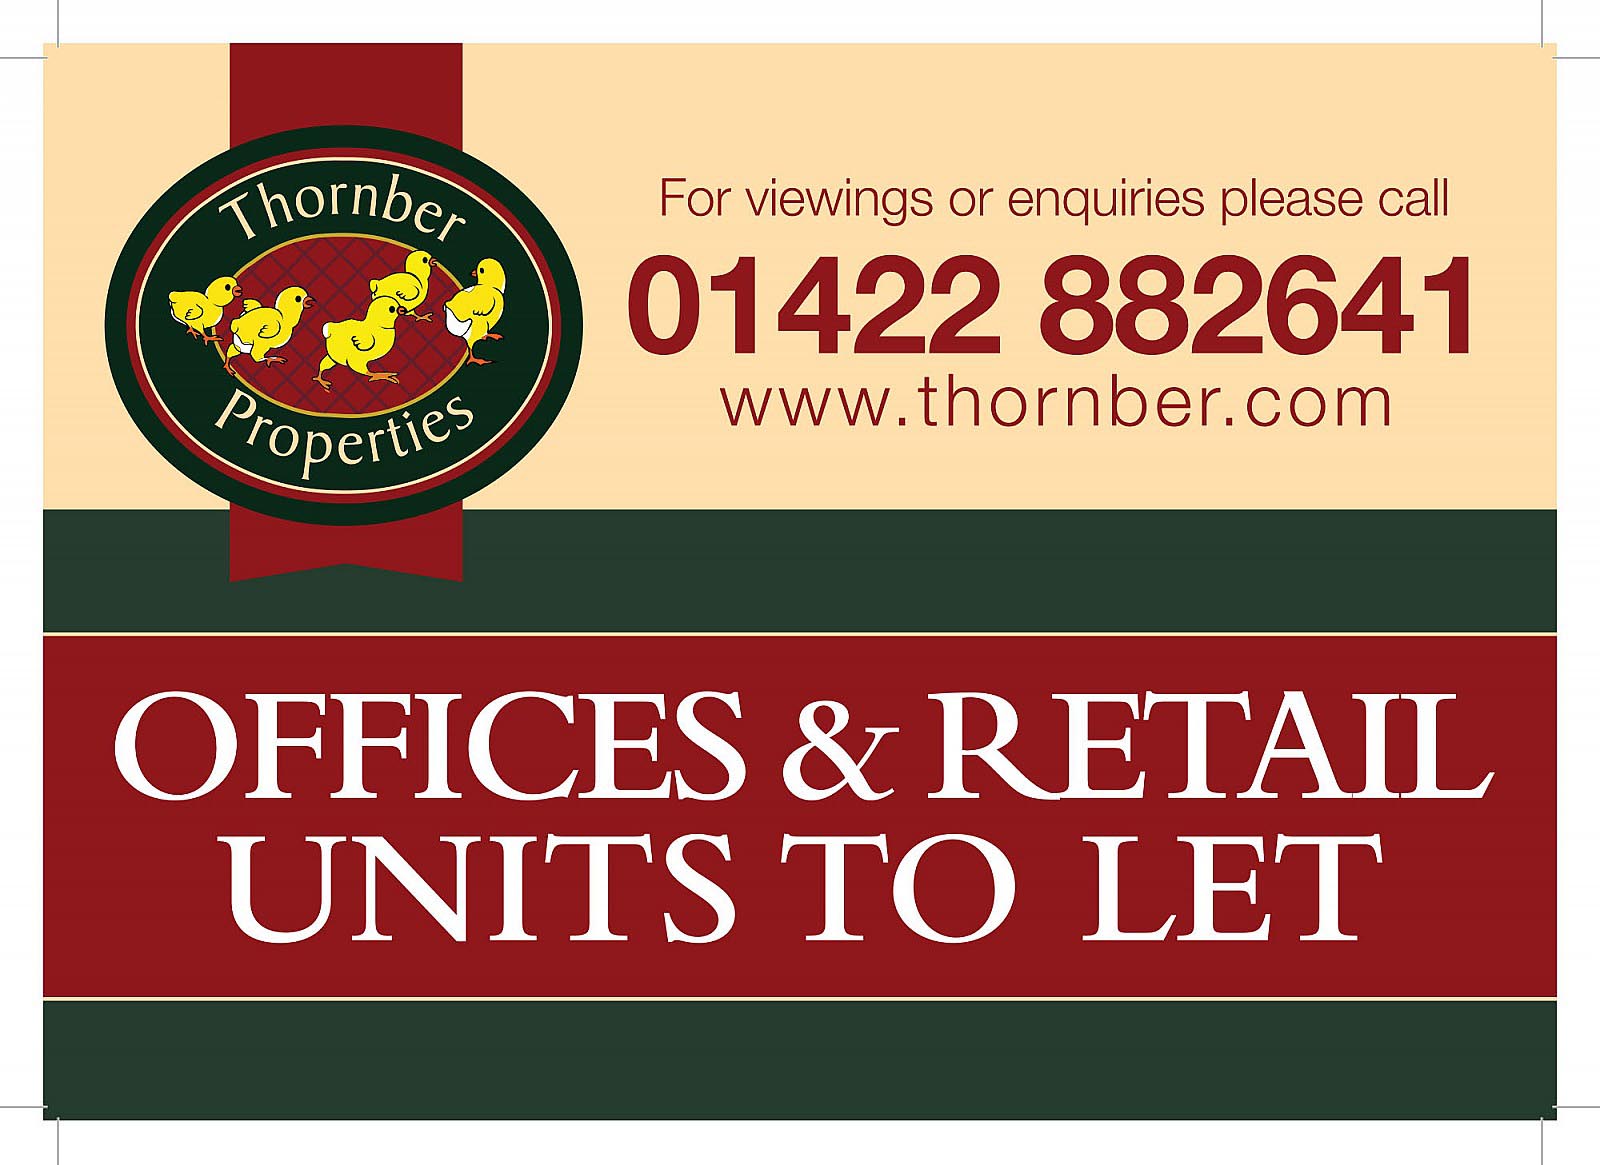 Thornber property - Signage